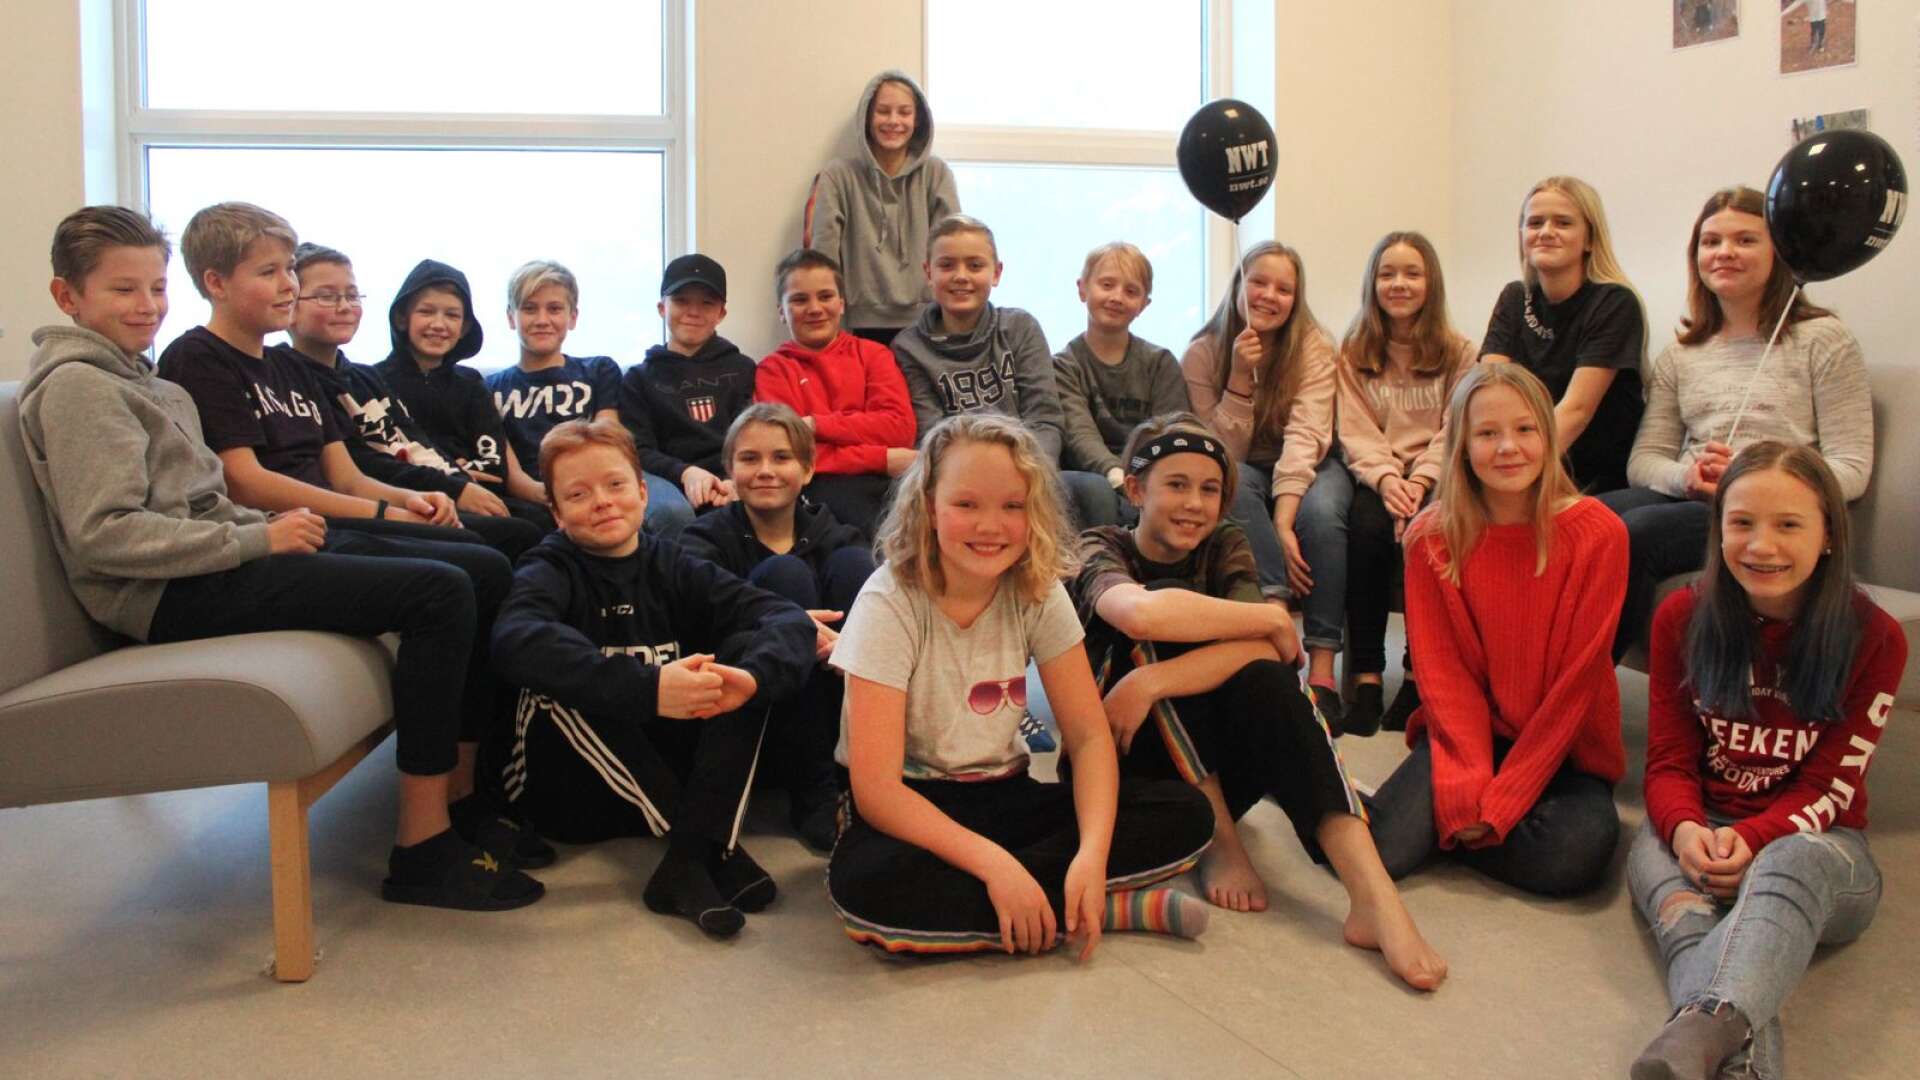 Klass 6 B på Bärstadsskolan på Hammarö stod för bästa läsarbild i Minibladet under hösten. Priset på 1 500 kronor kommer de att använda till skolresan.